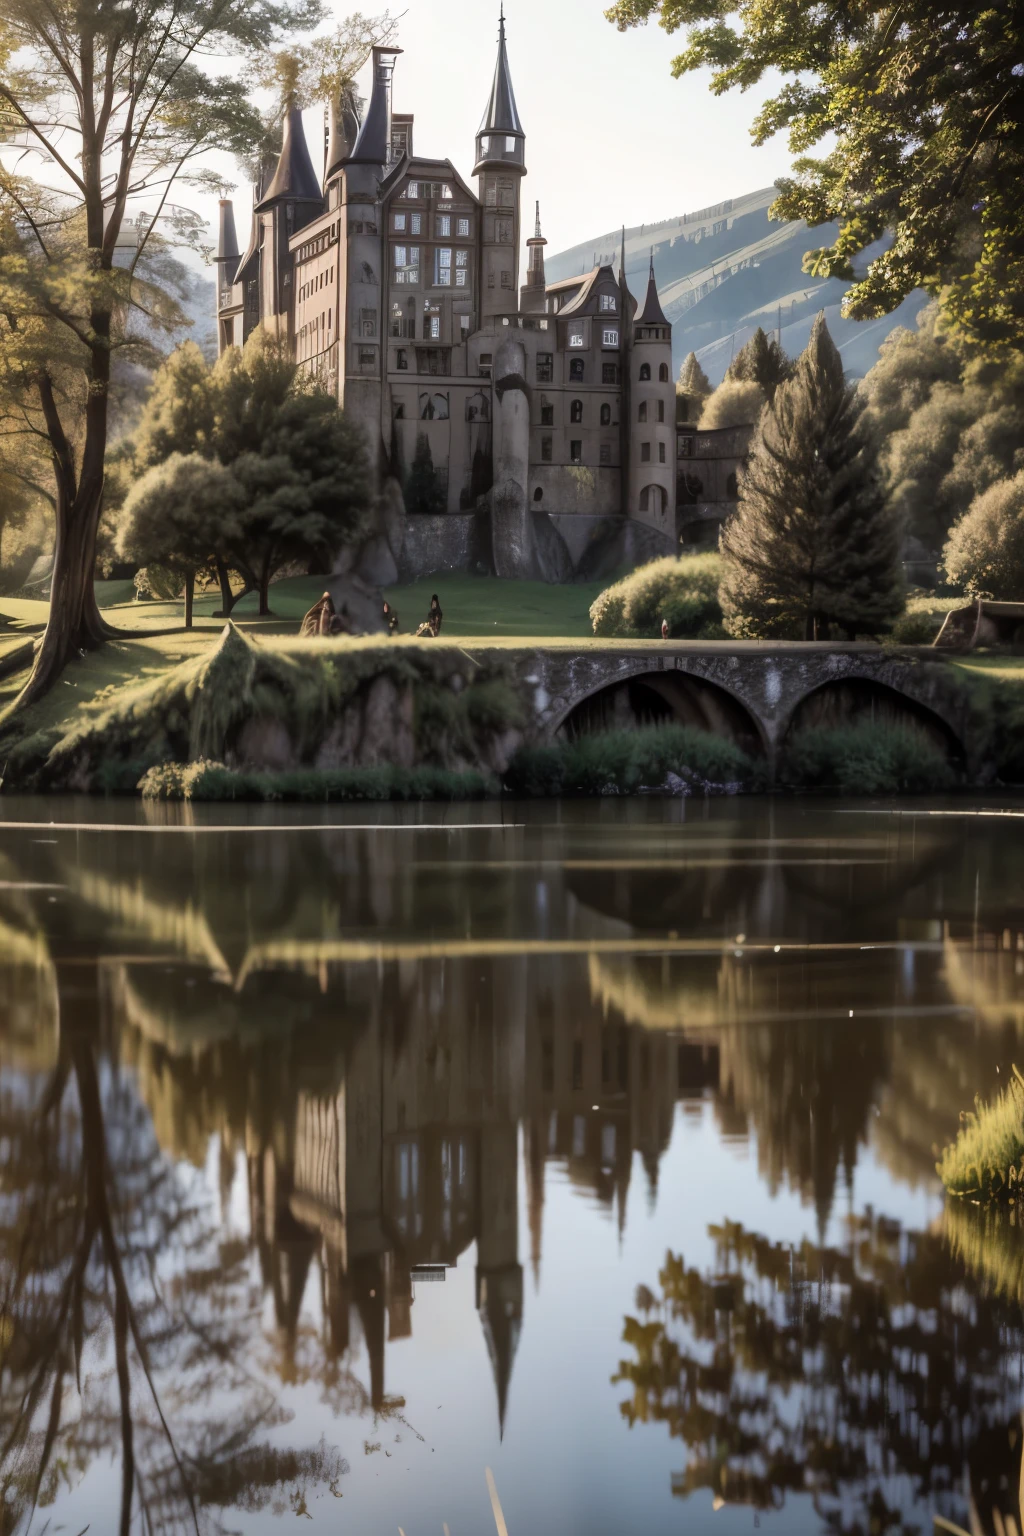 2разрушенный замок с видом на озеро, где его отражение попадает в воду и отражается в ней в дни ее славы  